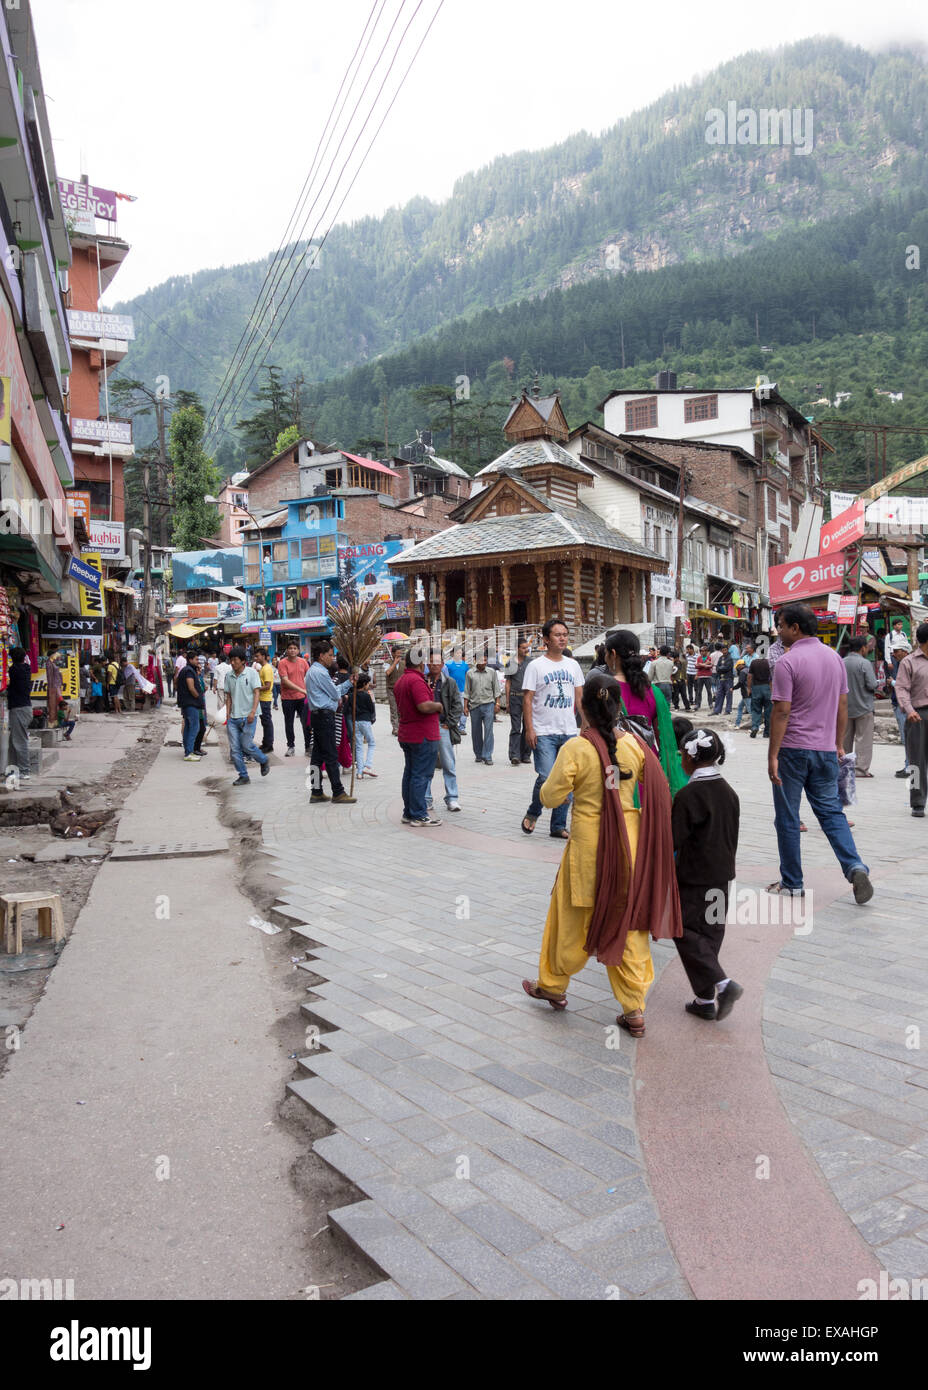 Scène de rue à la ville touristique de Manali, Himachal Pradesh, Inde Banque D'Images